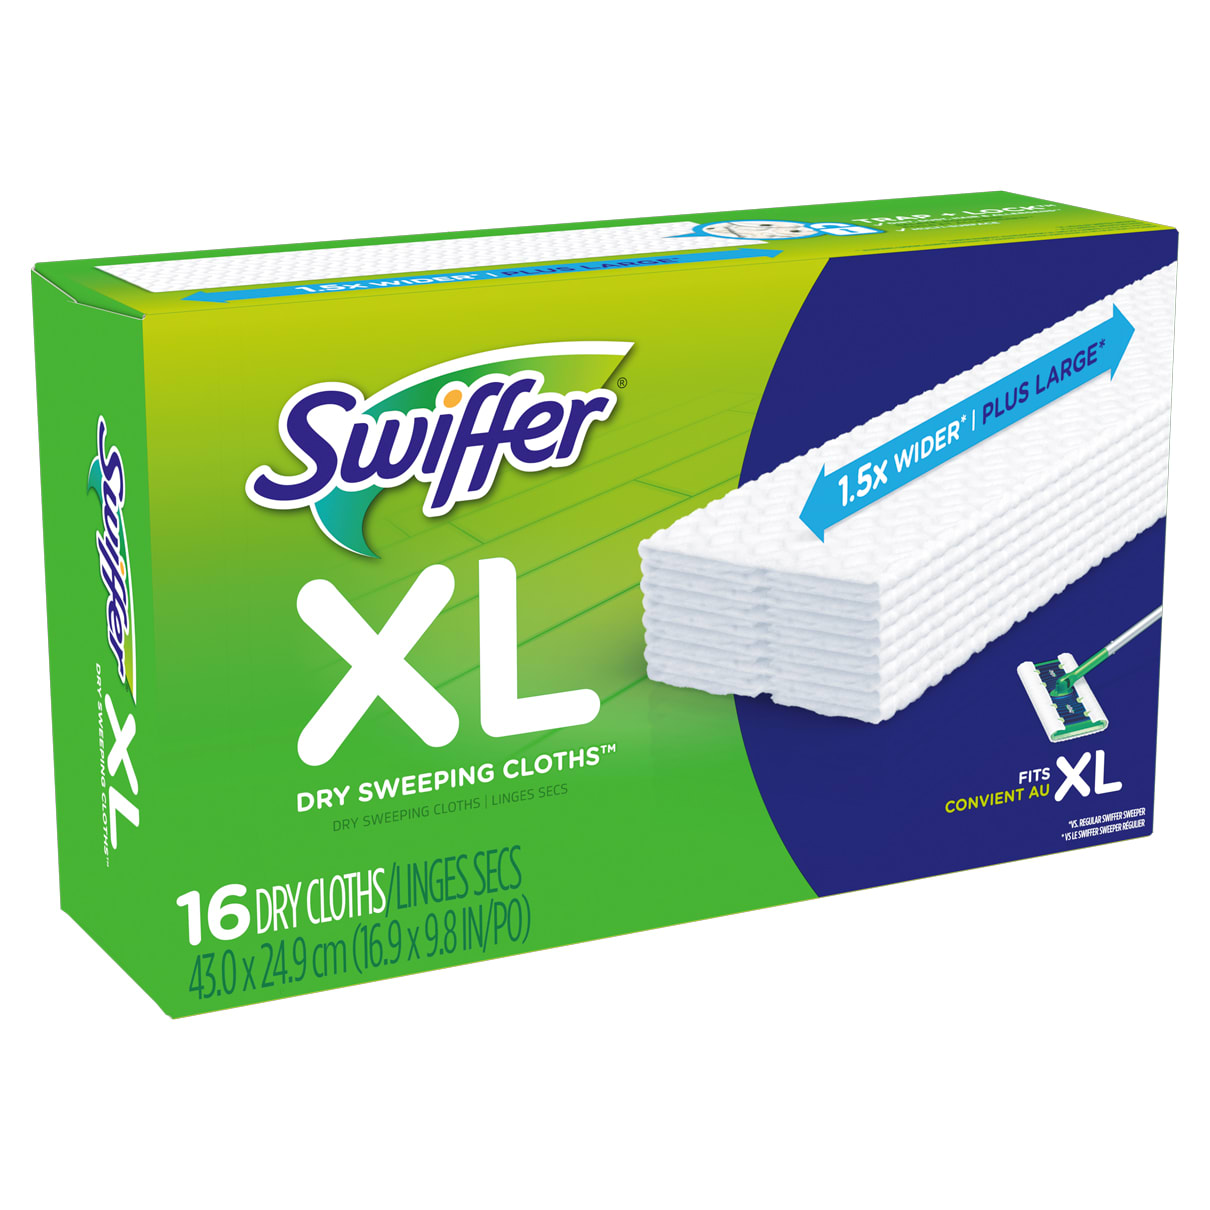 Starterkit Swiffer Duster XXL + 2 refills